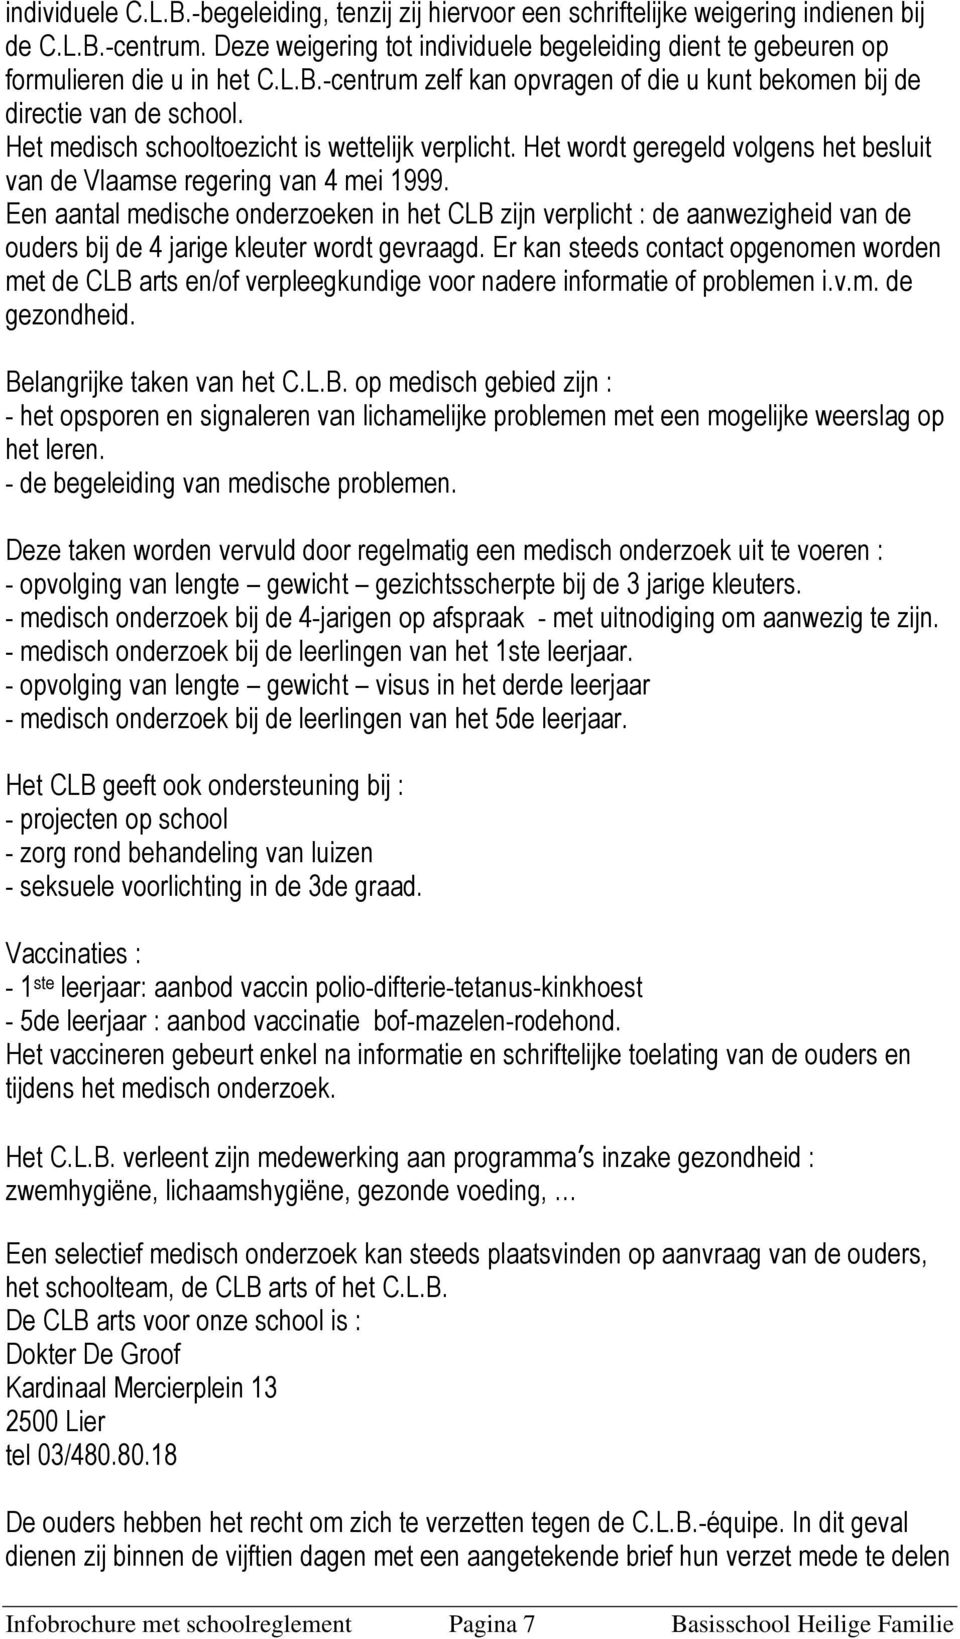 Het medisch schooltoezicht is wettelijk verplicht. Het wordt geregeld volgens het besluit van de Vlaamse regering van 4 mei 1999.